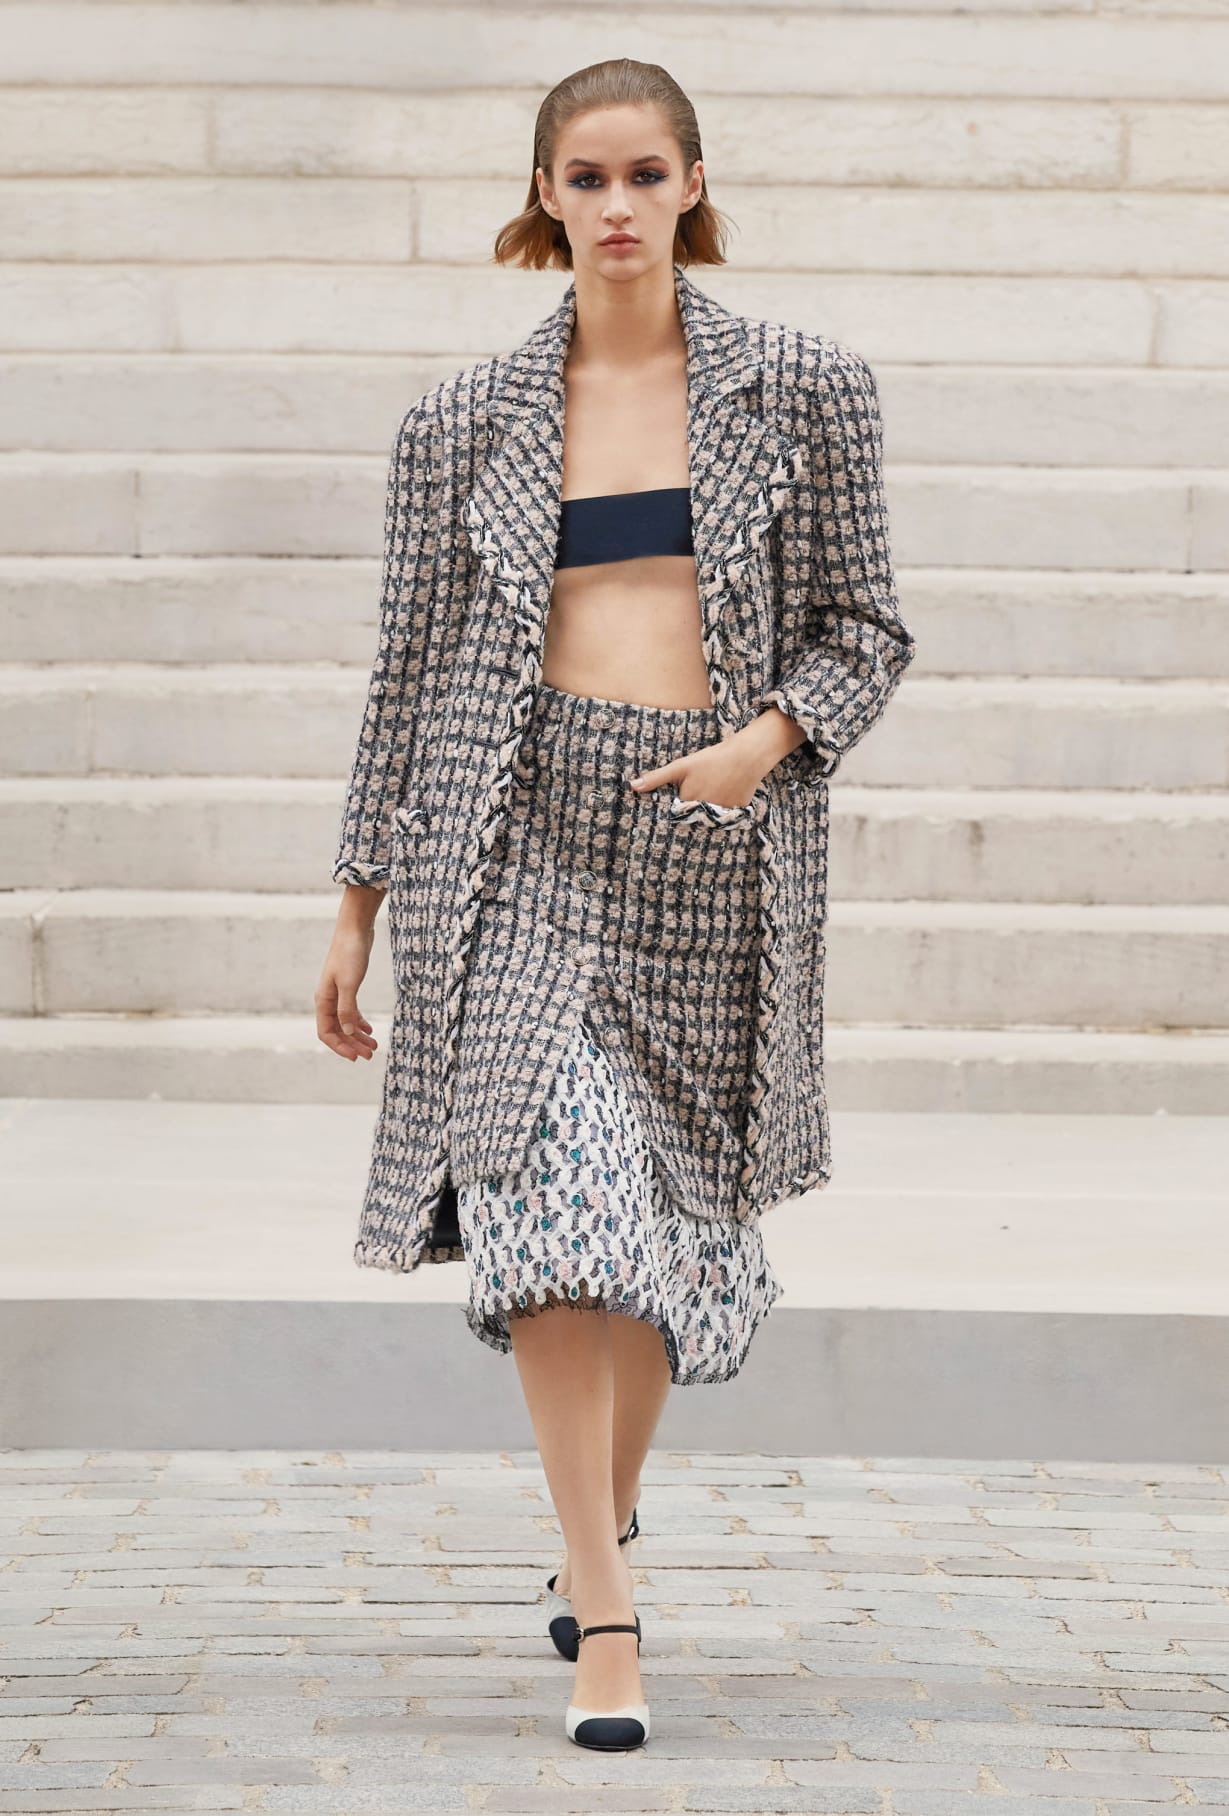 Chanel Haute Couture 2021: Sự tối giản của sàn diễn để tôn vinh trang phục  - Ảnh 10